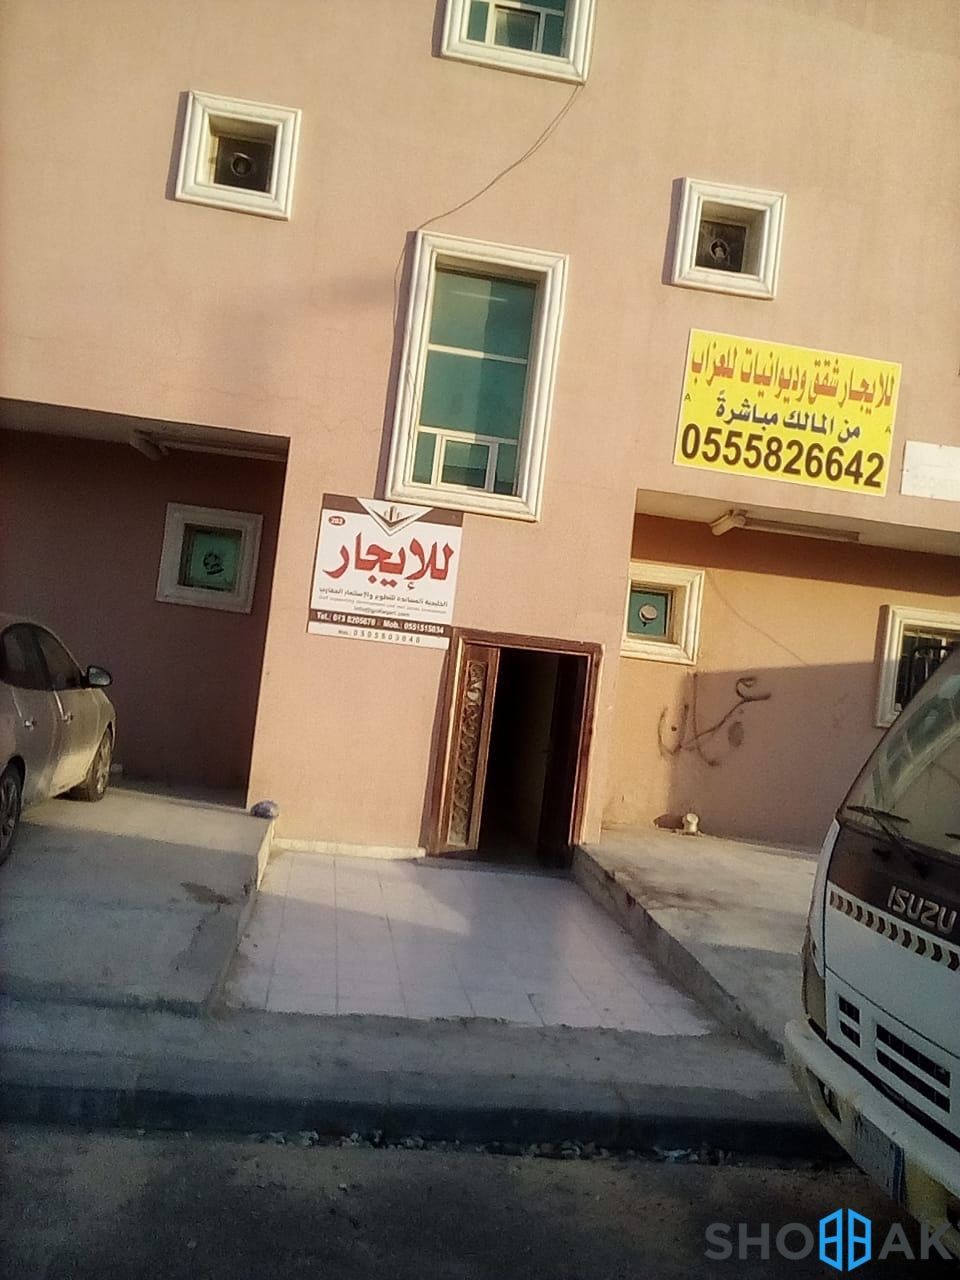 عمارة في حي ضباب للبيع Shobbak Saudi Arabia